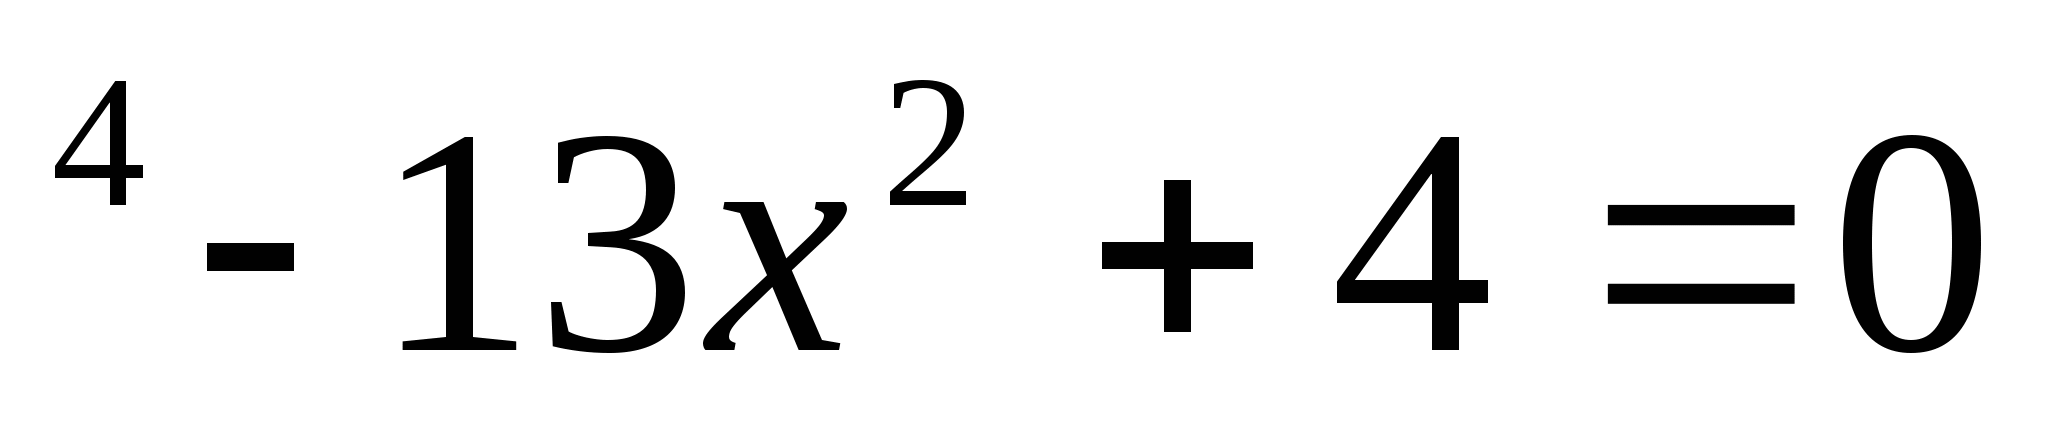 Урок- зачет по теме «Решение квадратных уравнений», 8 класс